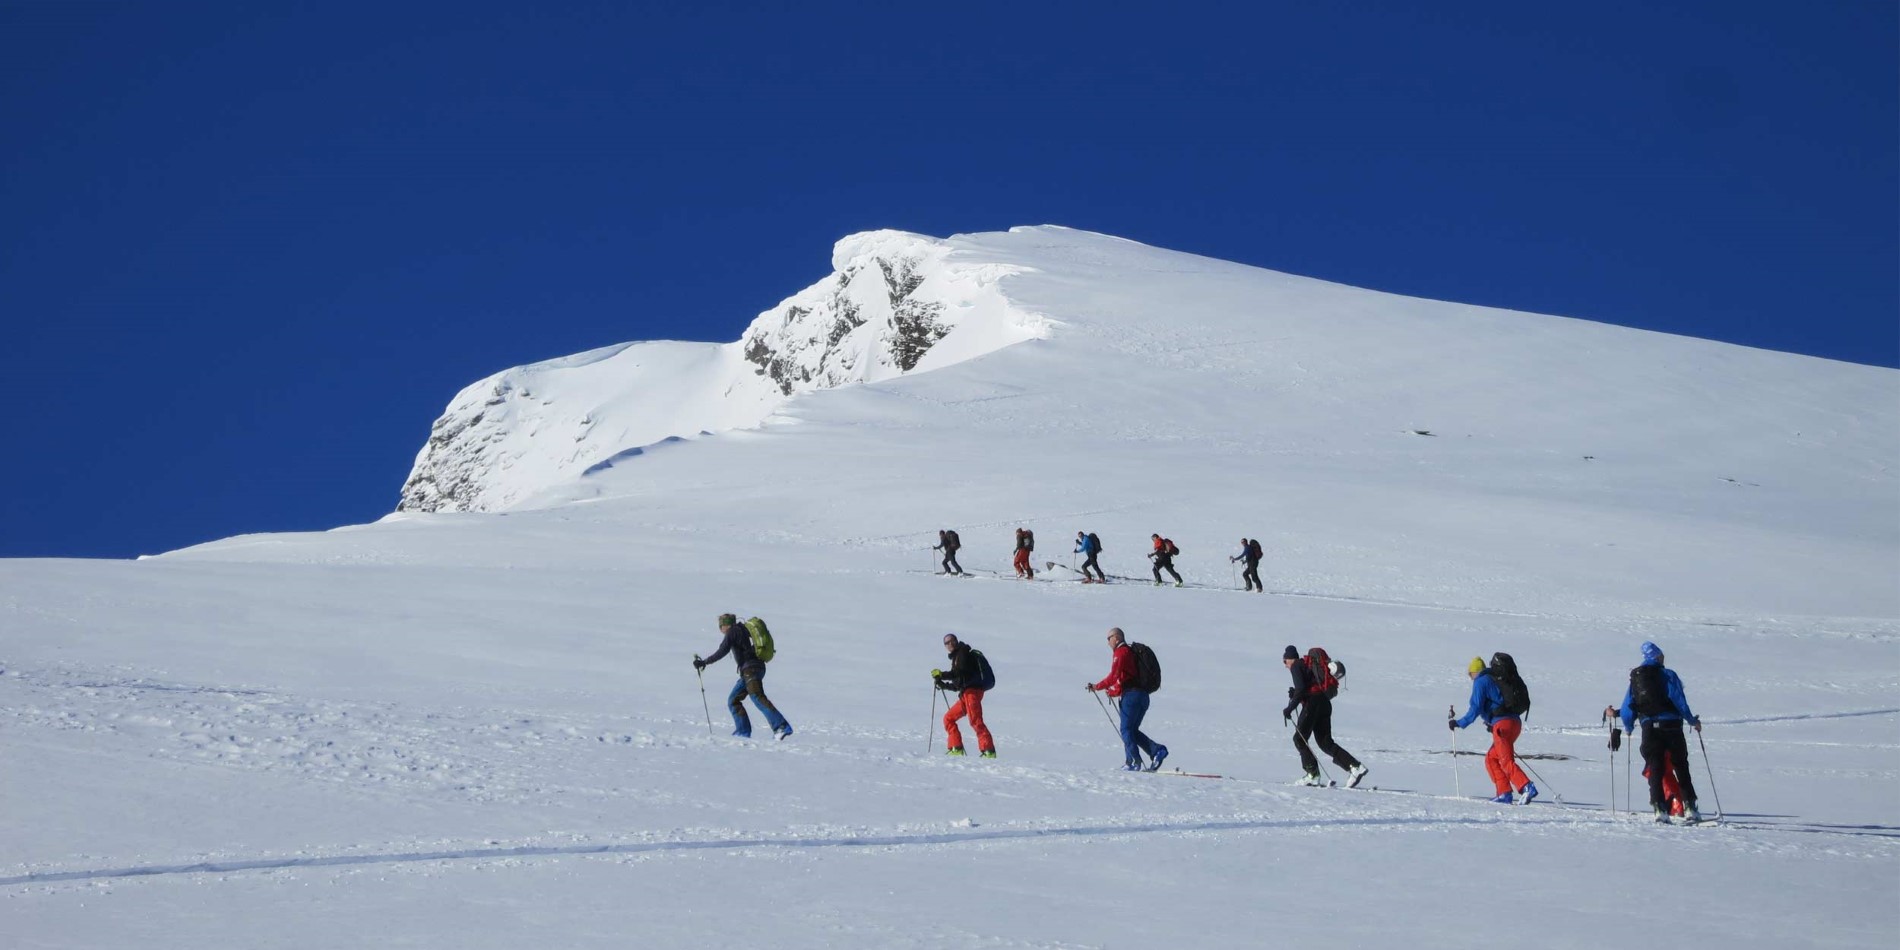 En grupp människor åker skidor nedför en snötäckt sluttning